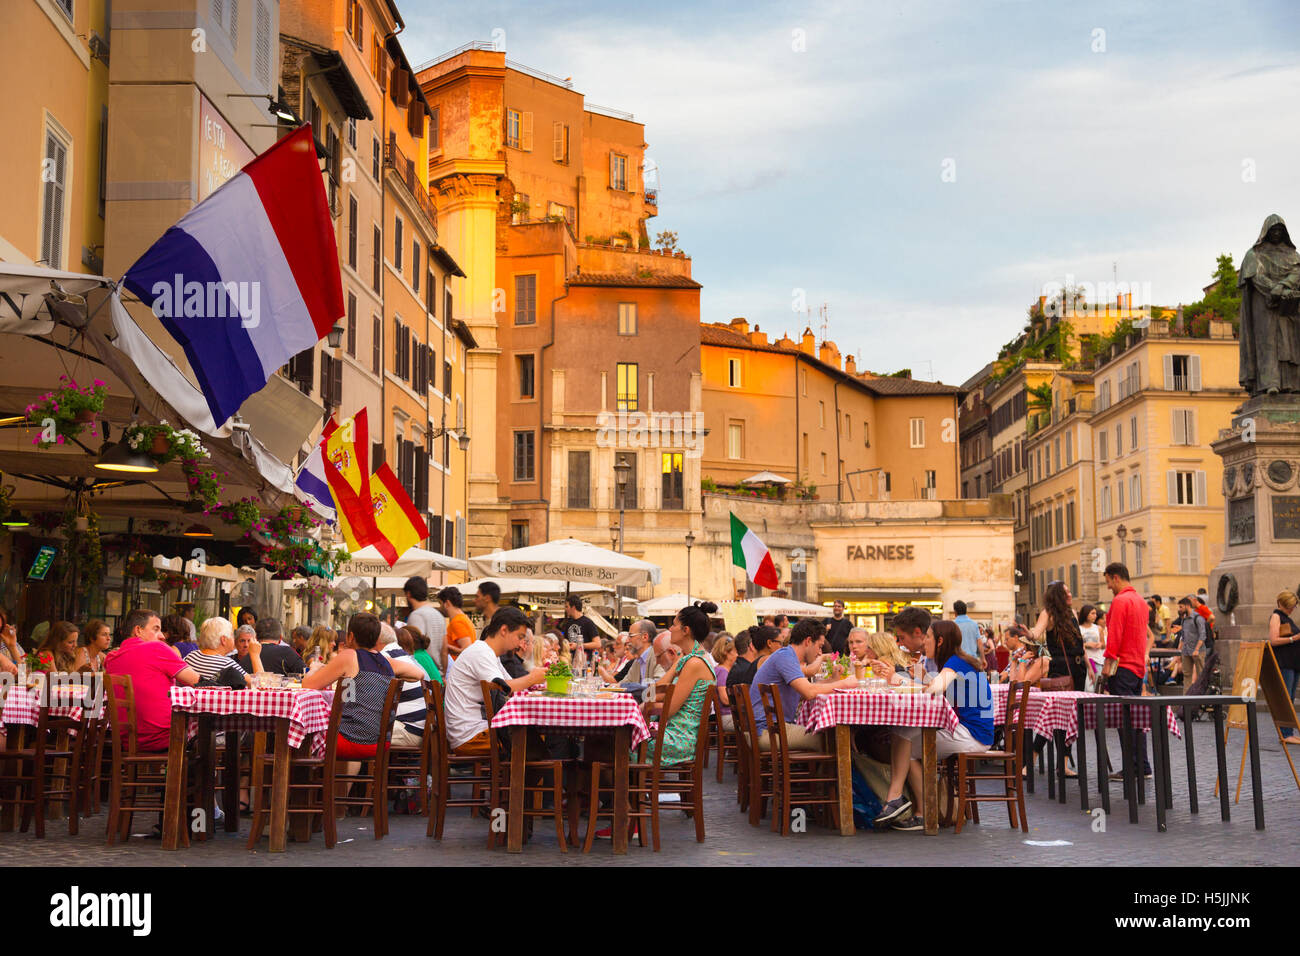 Piazza Campo De Fiori in Rome, Italy Stock Photo - Alamy